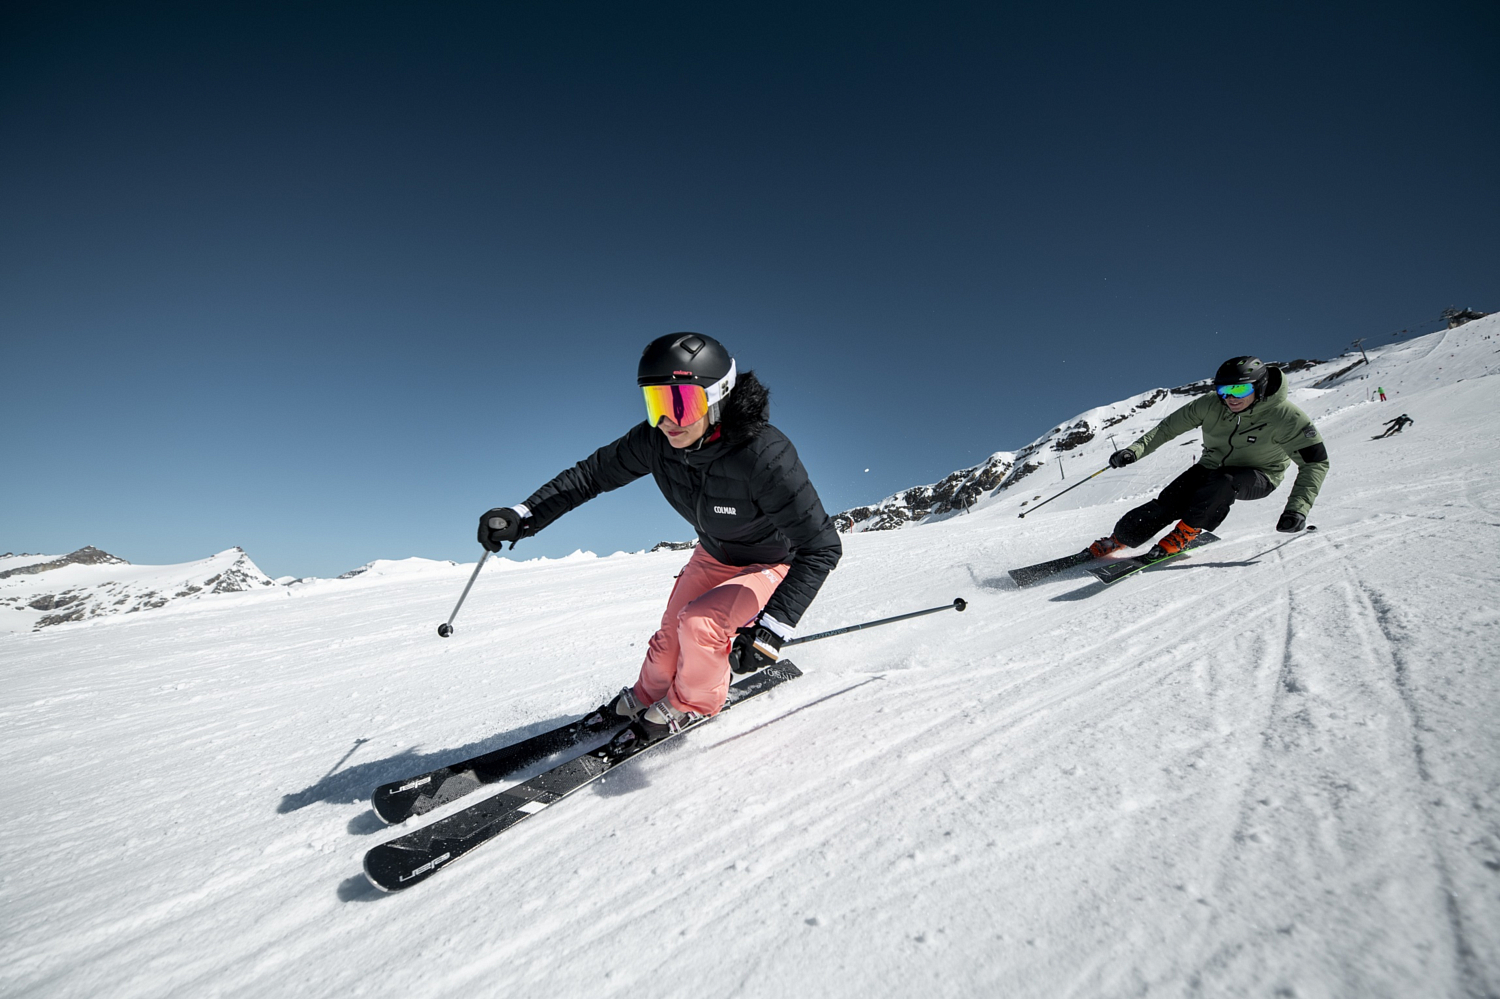 Горные лыжи с креплениями ELAN INSOMNIA 16 TI PS + ELW11.0